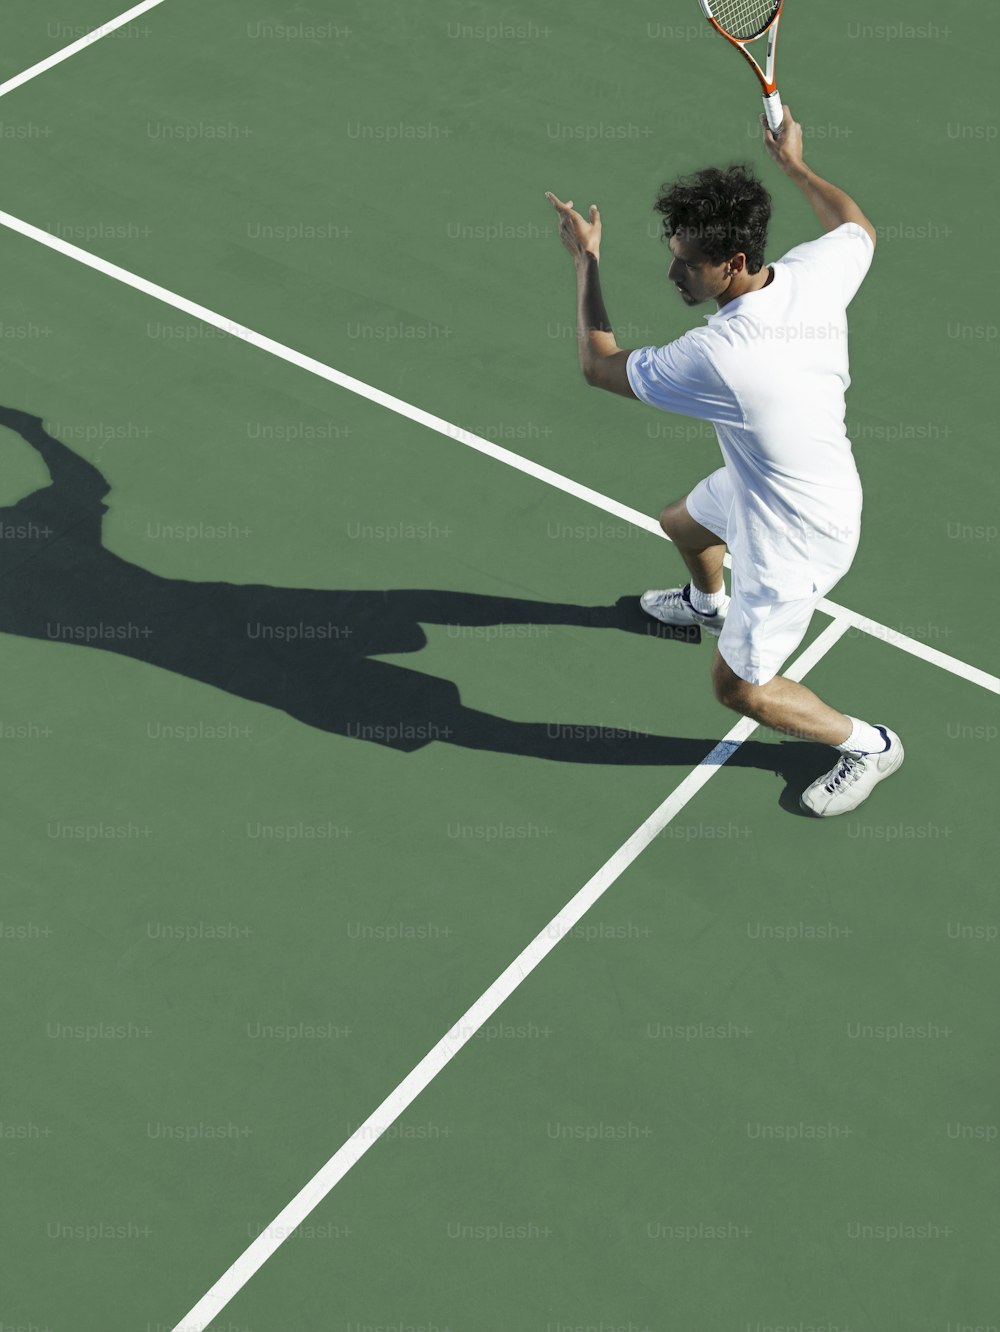 테�니스 코트에서 테니스 라켓을 들고 있는 남자